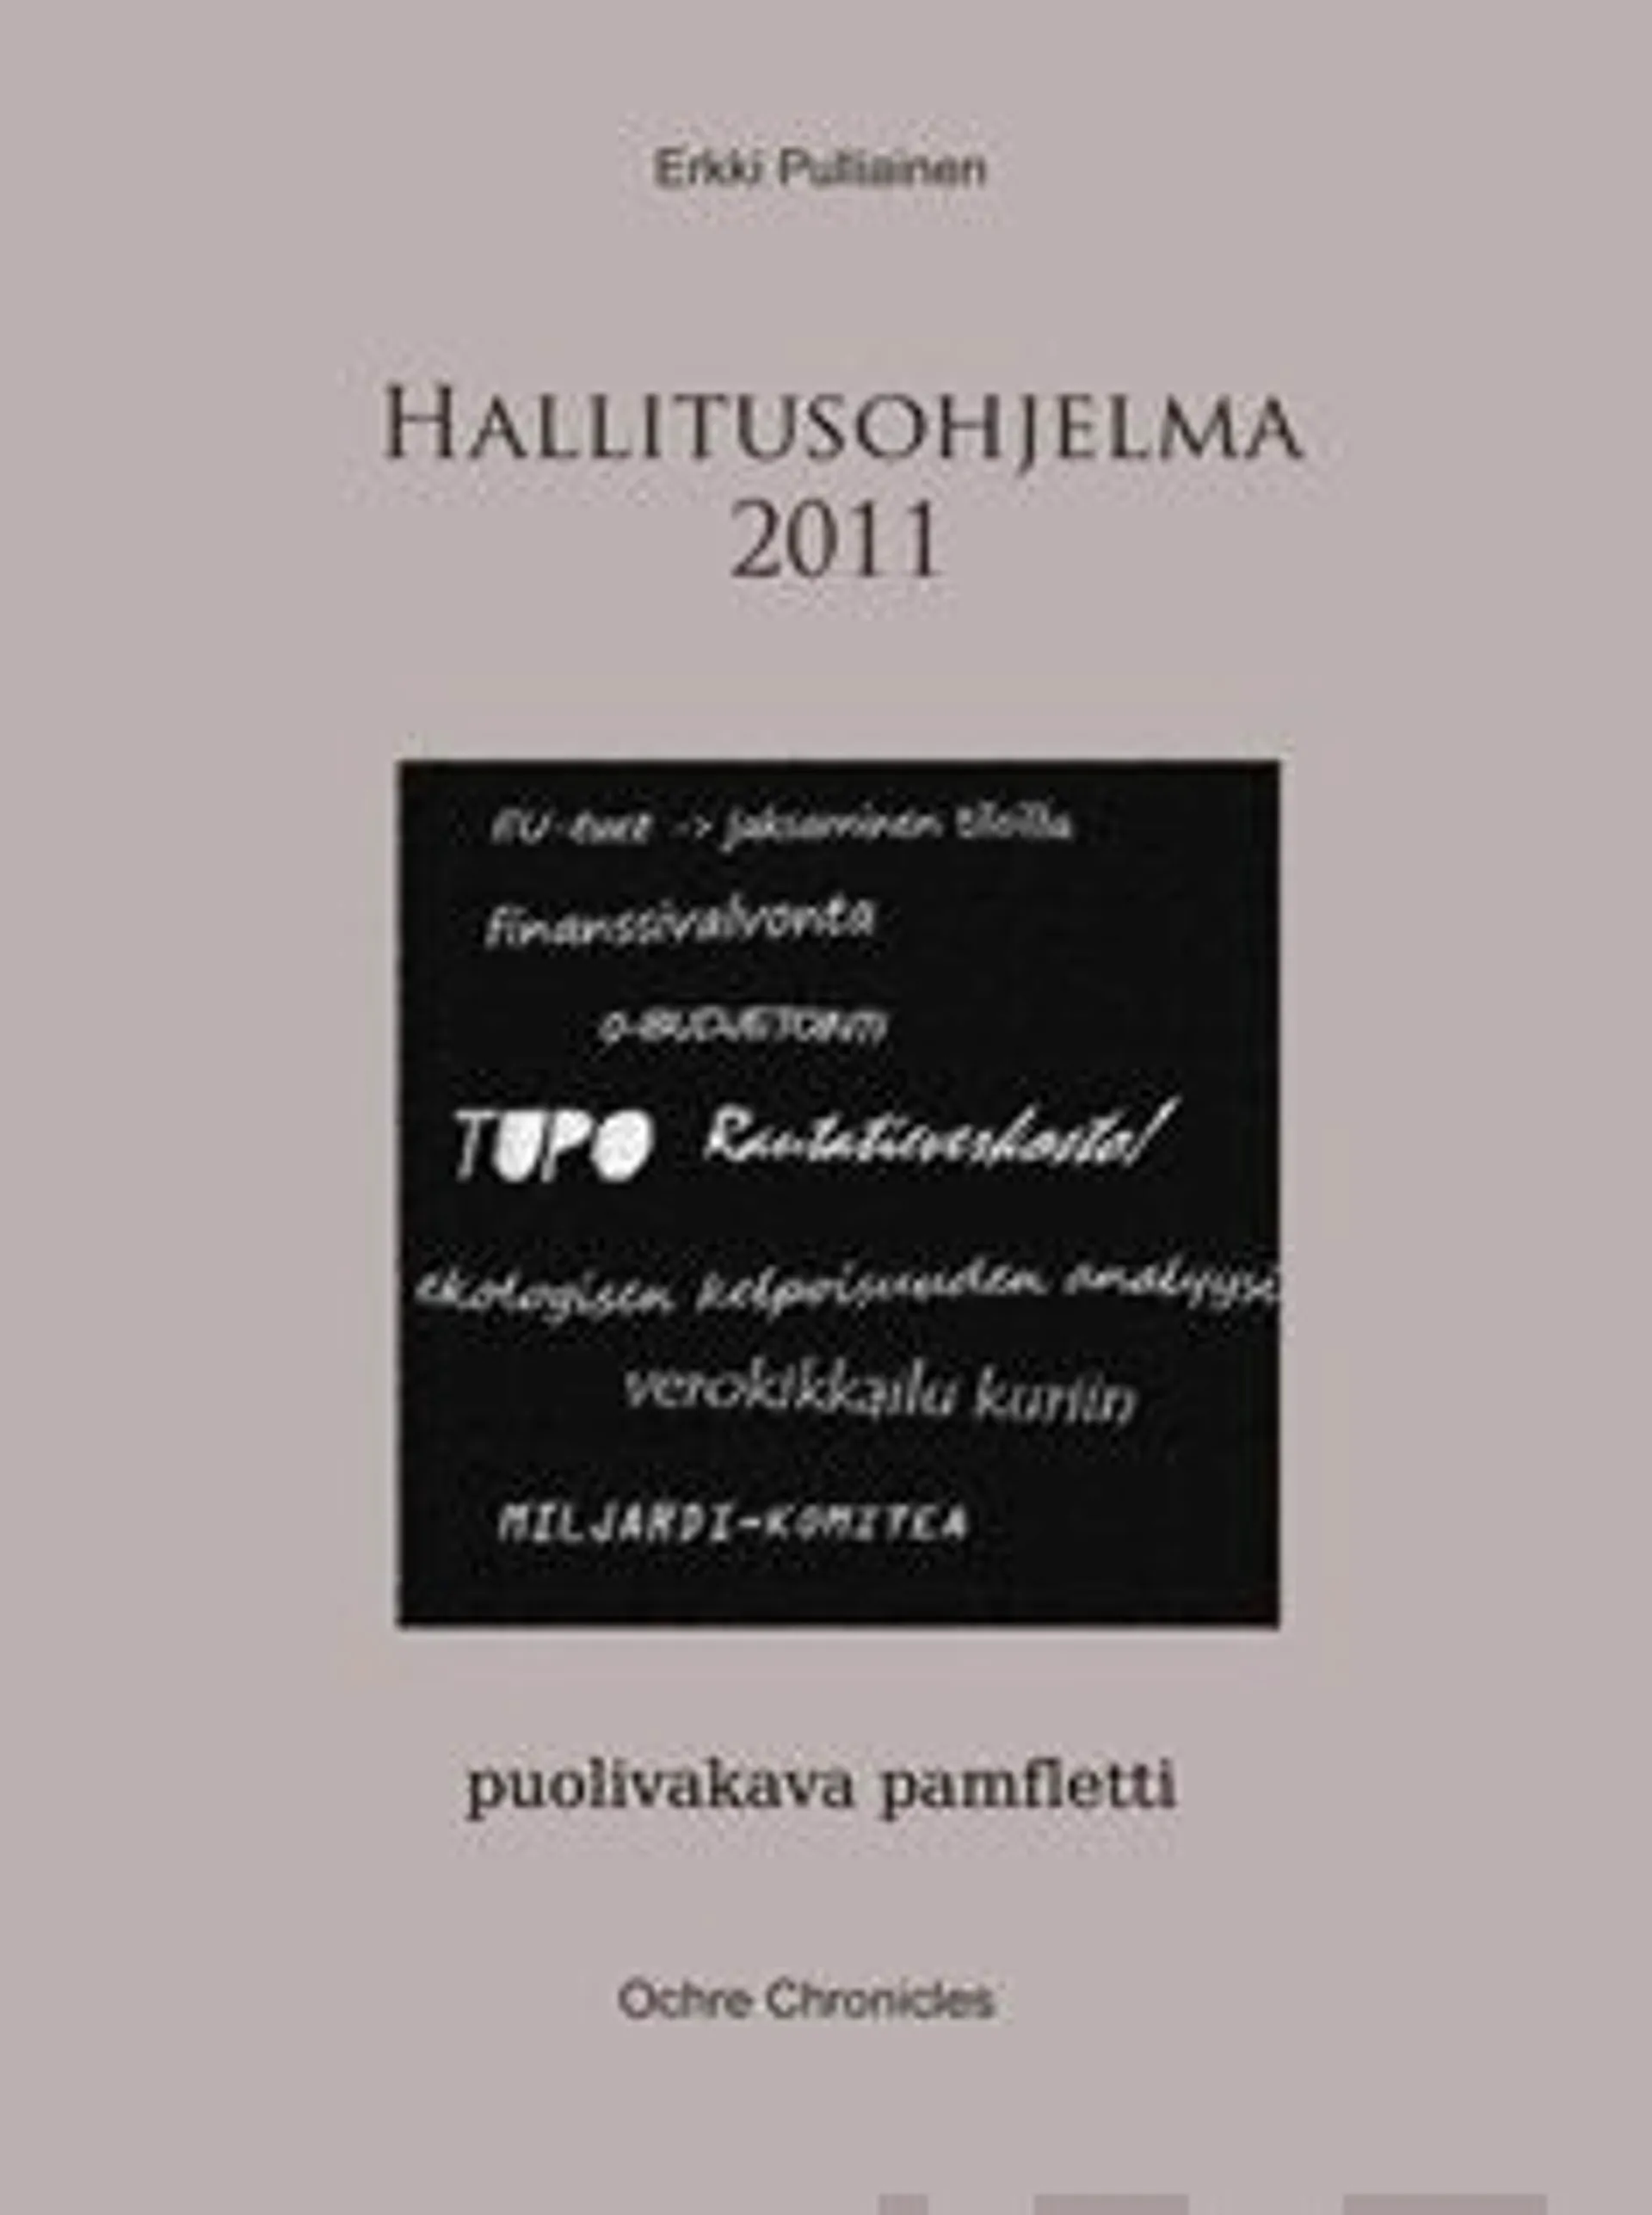 Pulliainen, Hallitusohjelma 2011